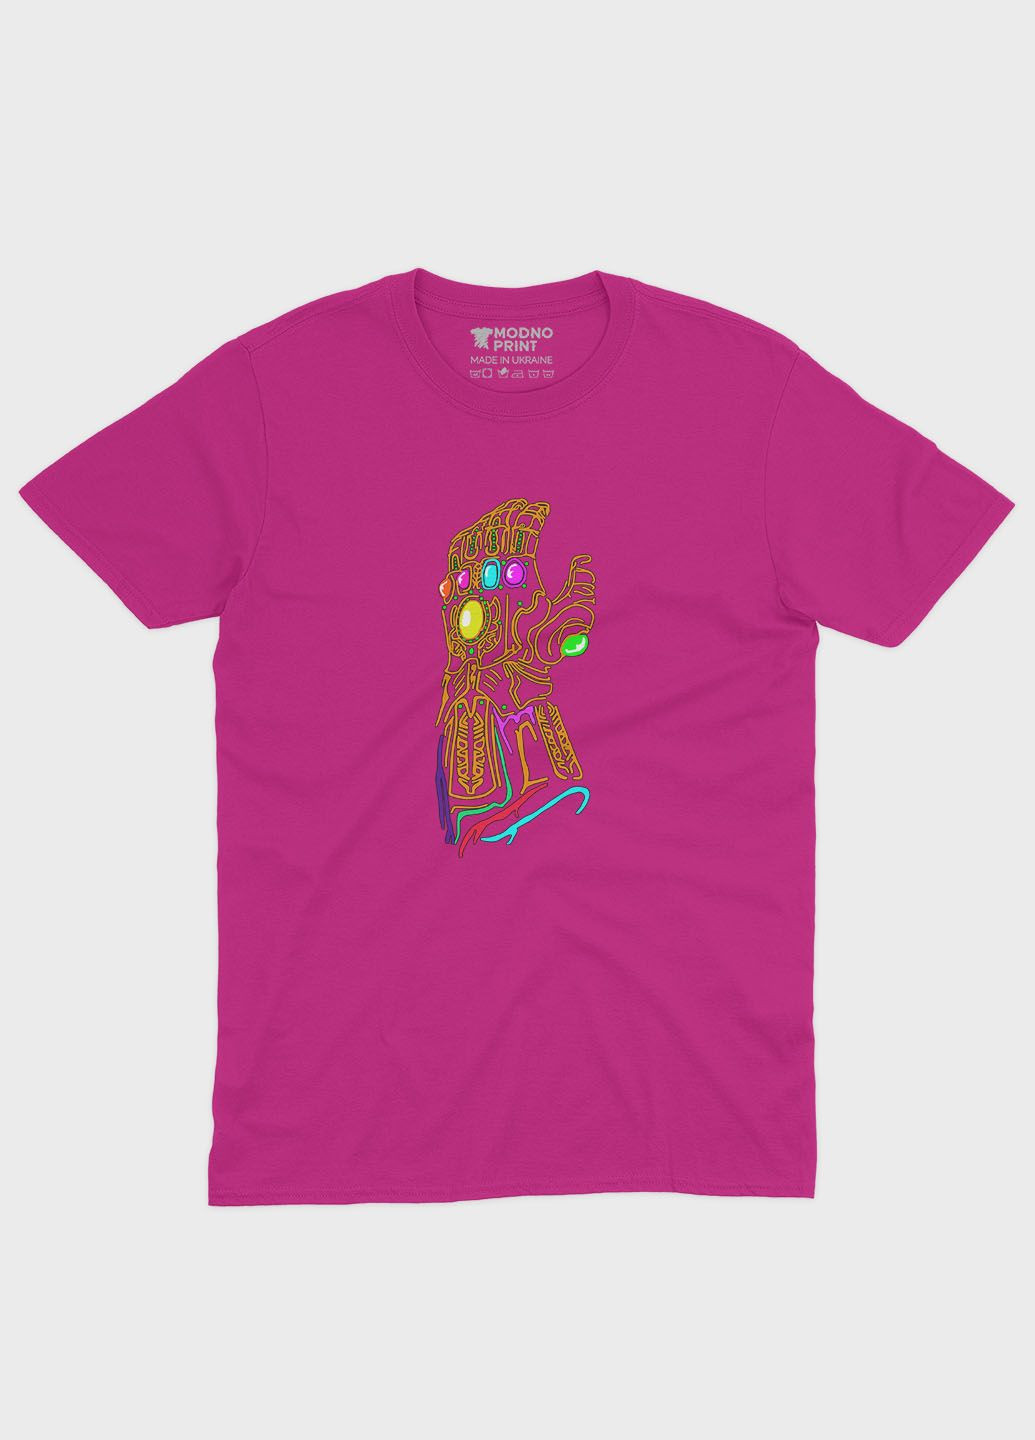 Розовая демисезонная футболка для девочки с принтом супезлоды - танос (ts001-1-fuxj-006-019-014-g) Modno